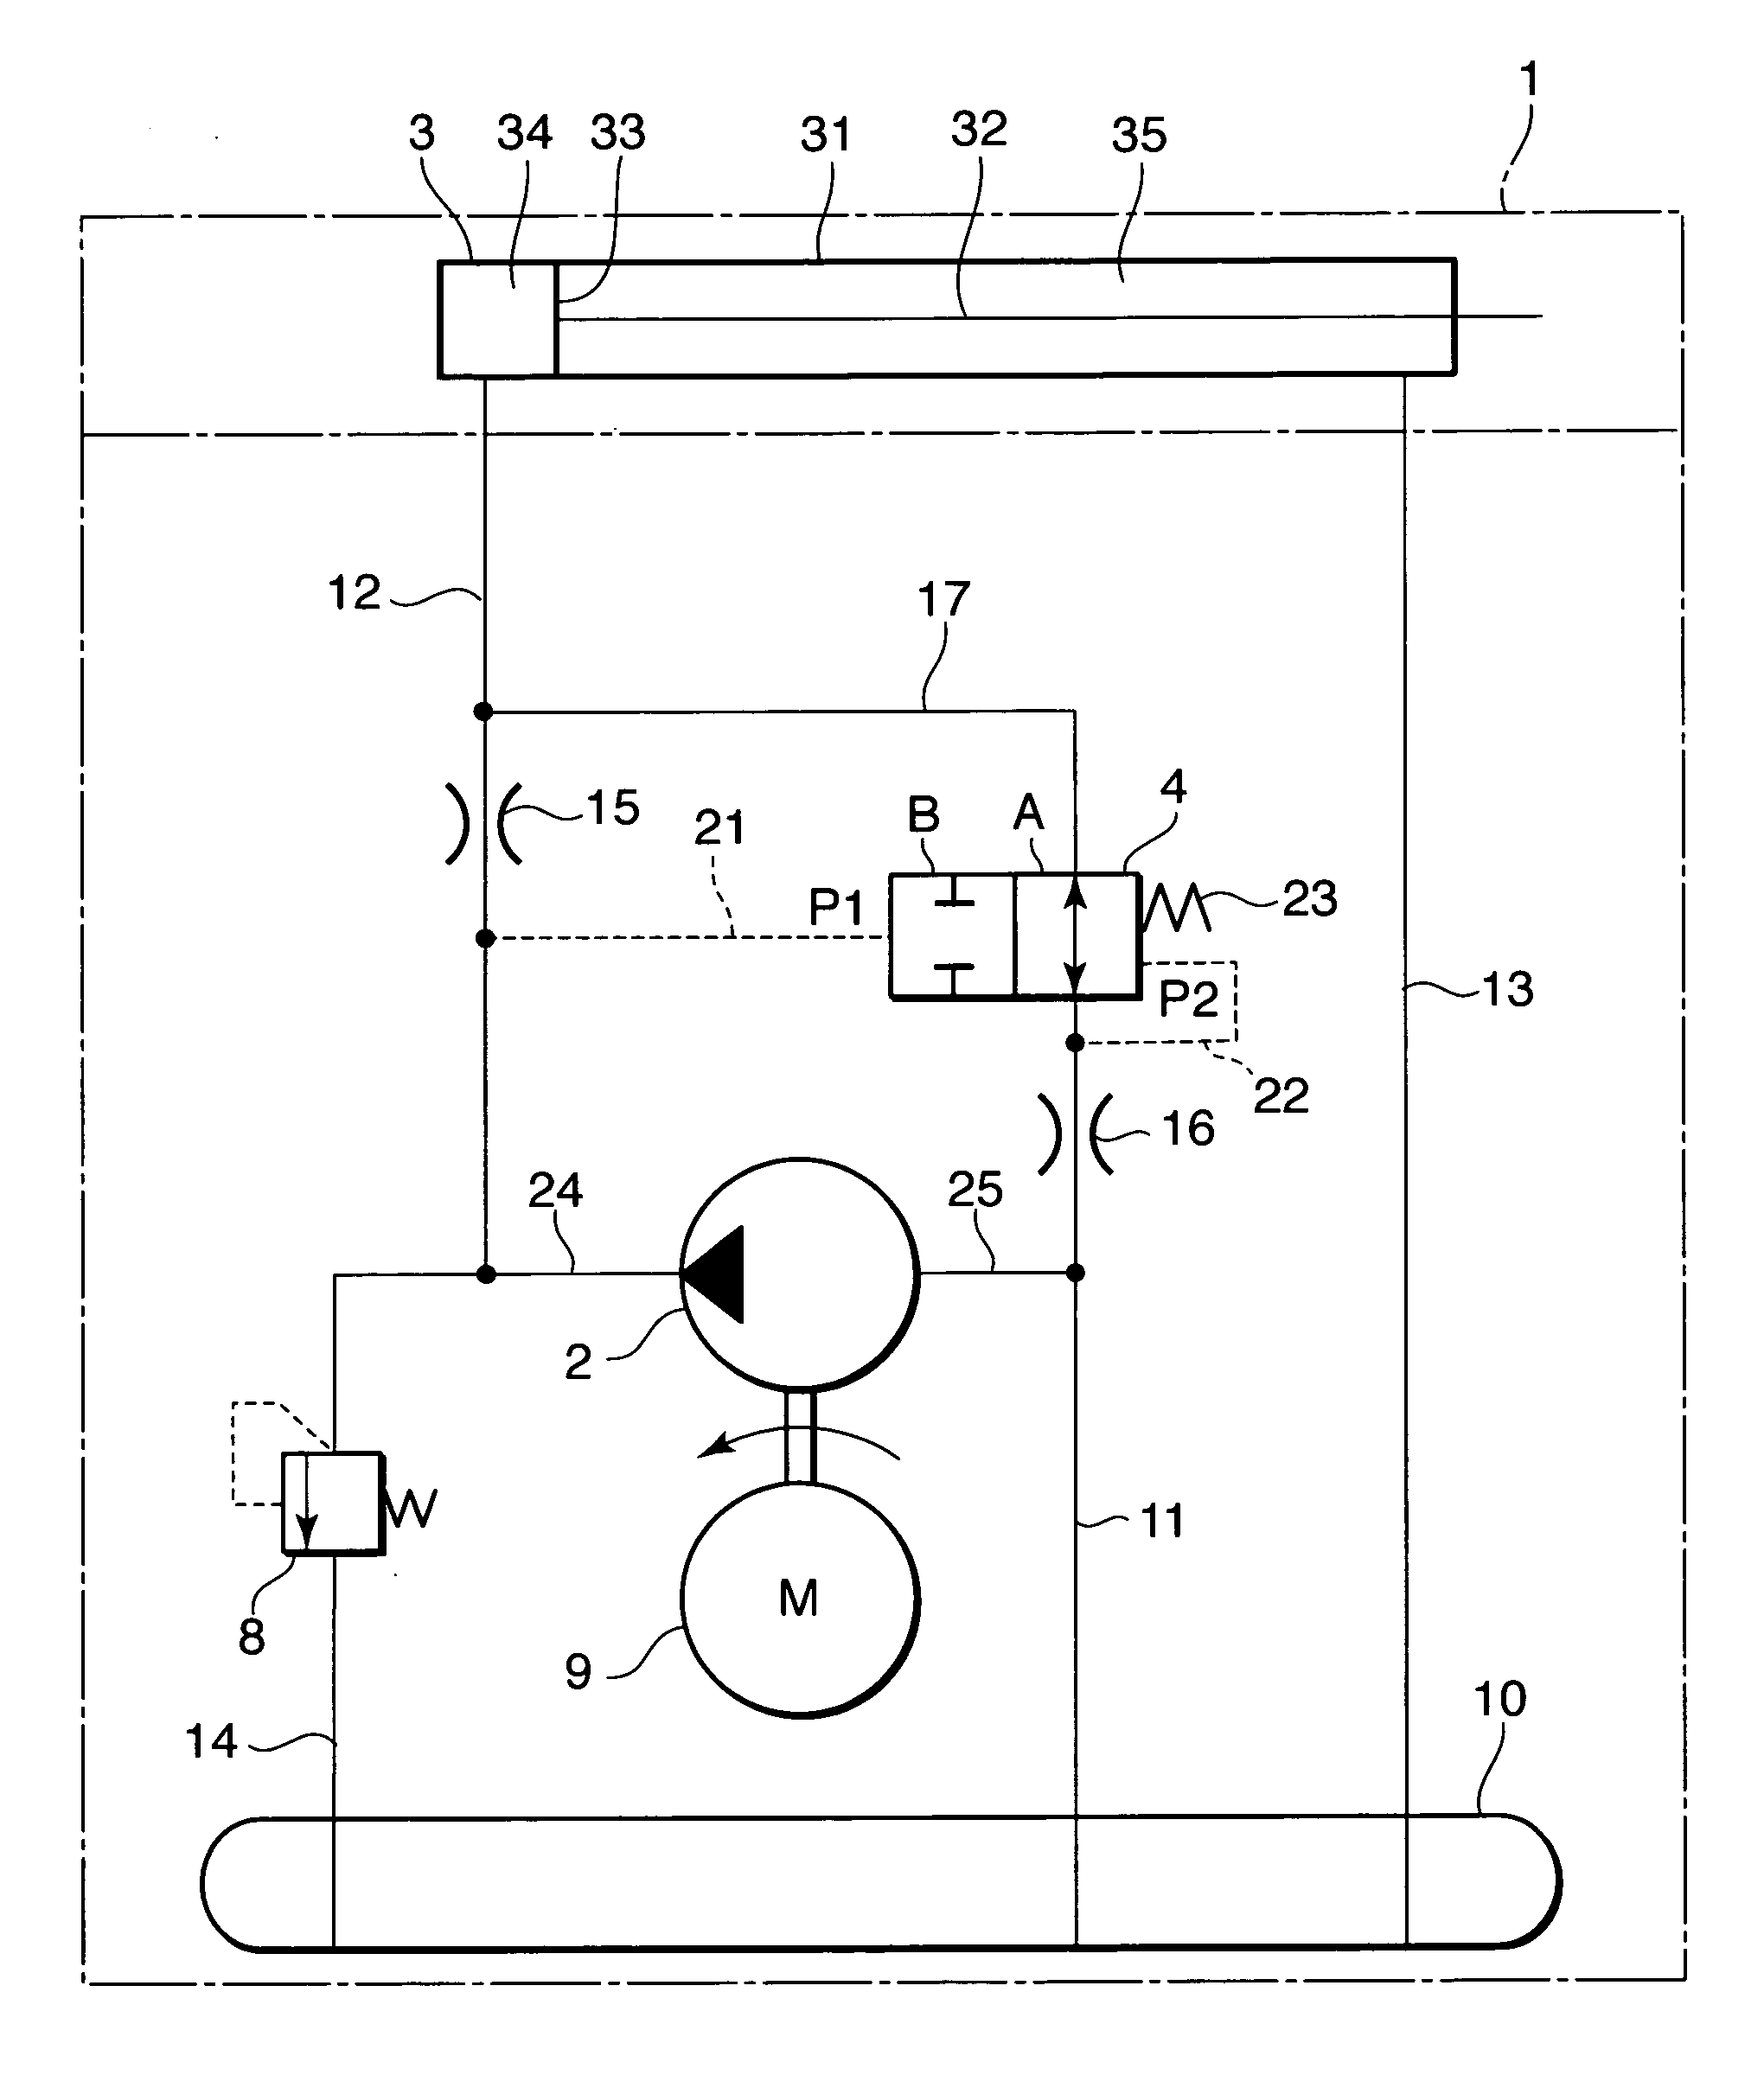 Fluid-pressure actuator unit